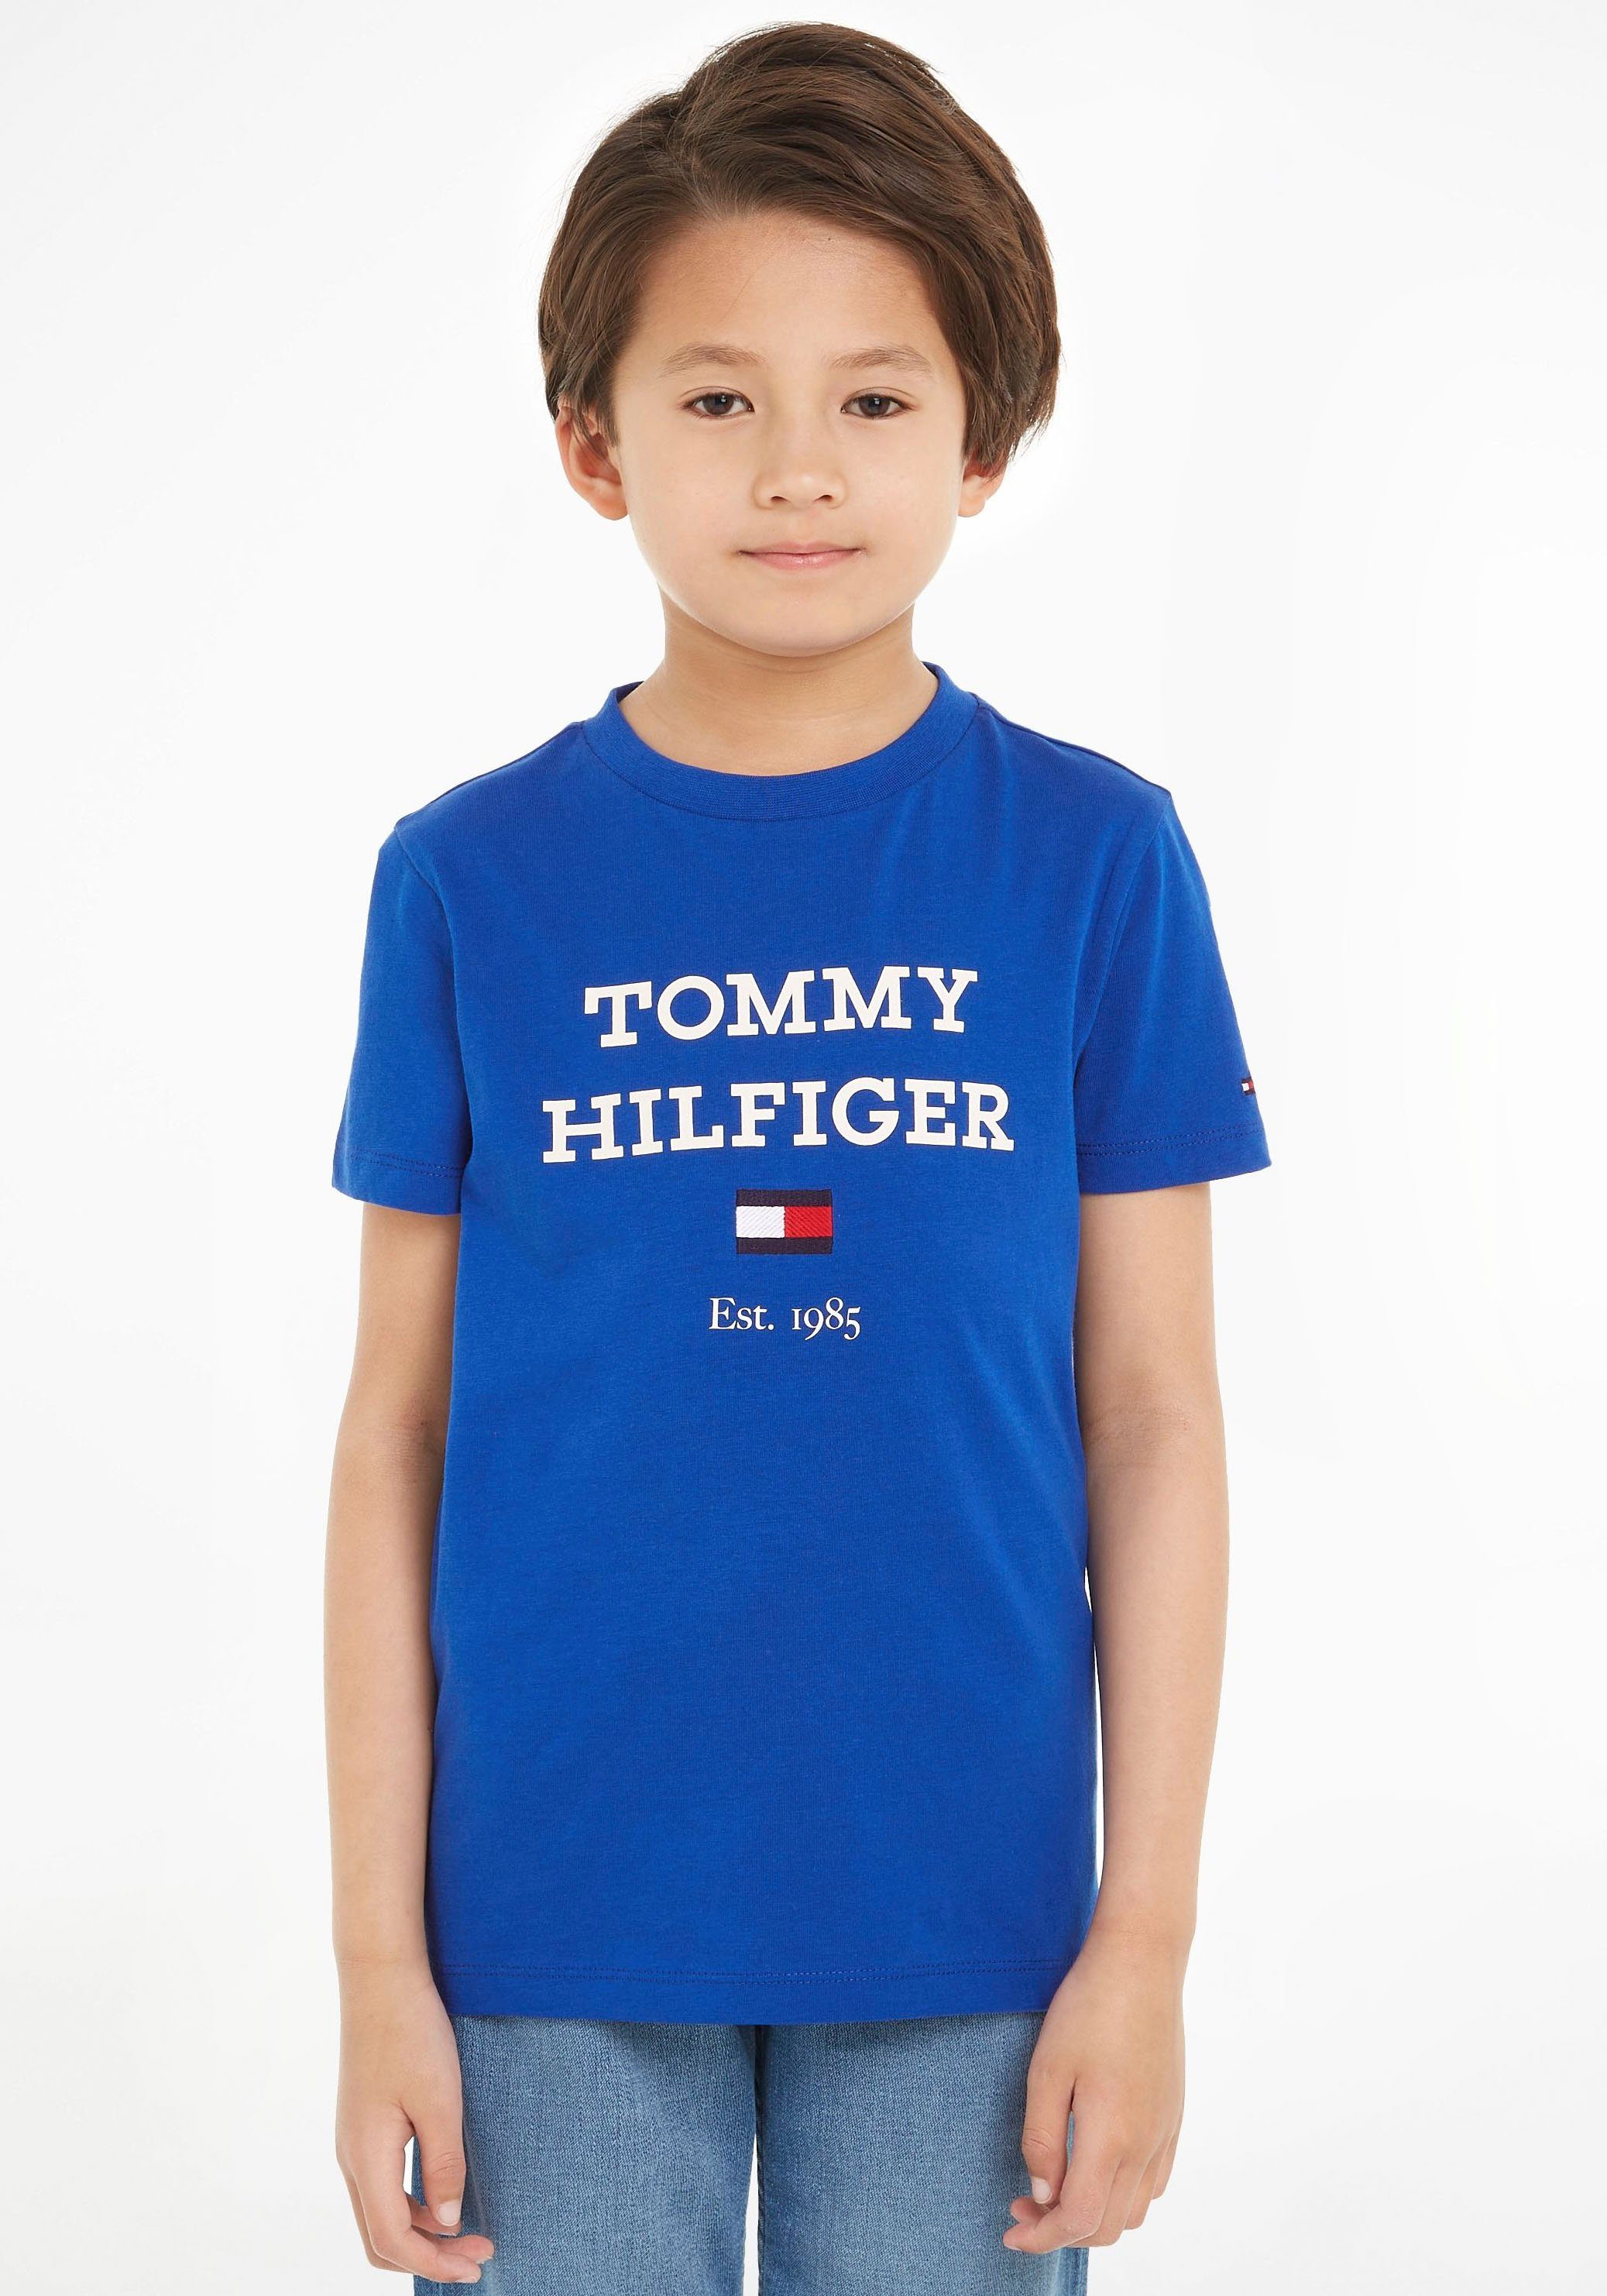 Tommy | Hilfiger OTTO kaufen online Kindermode